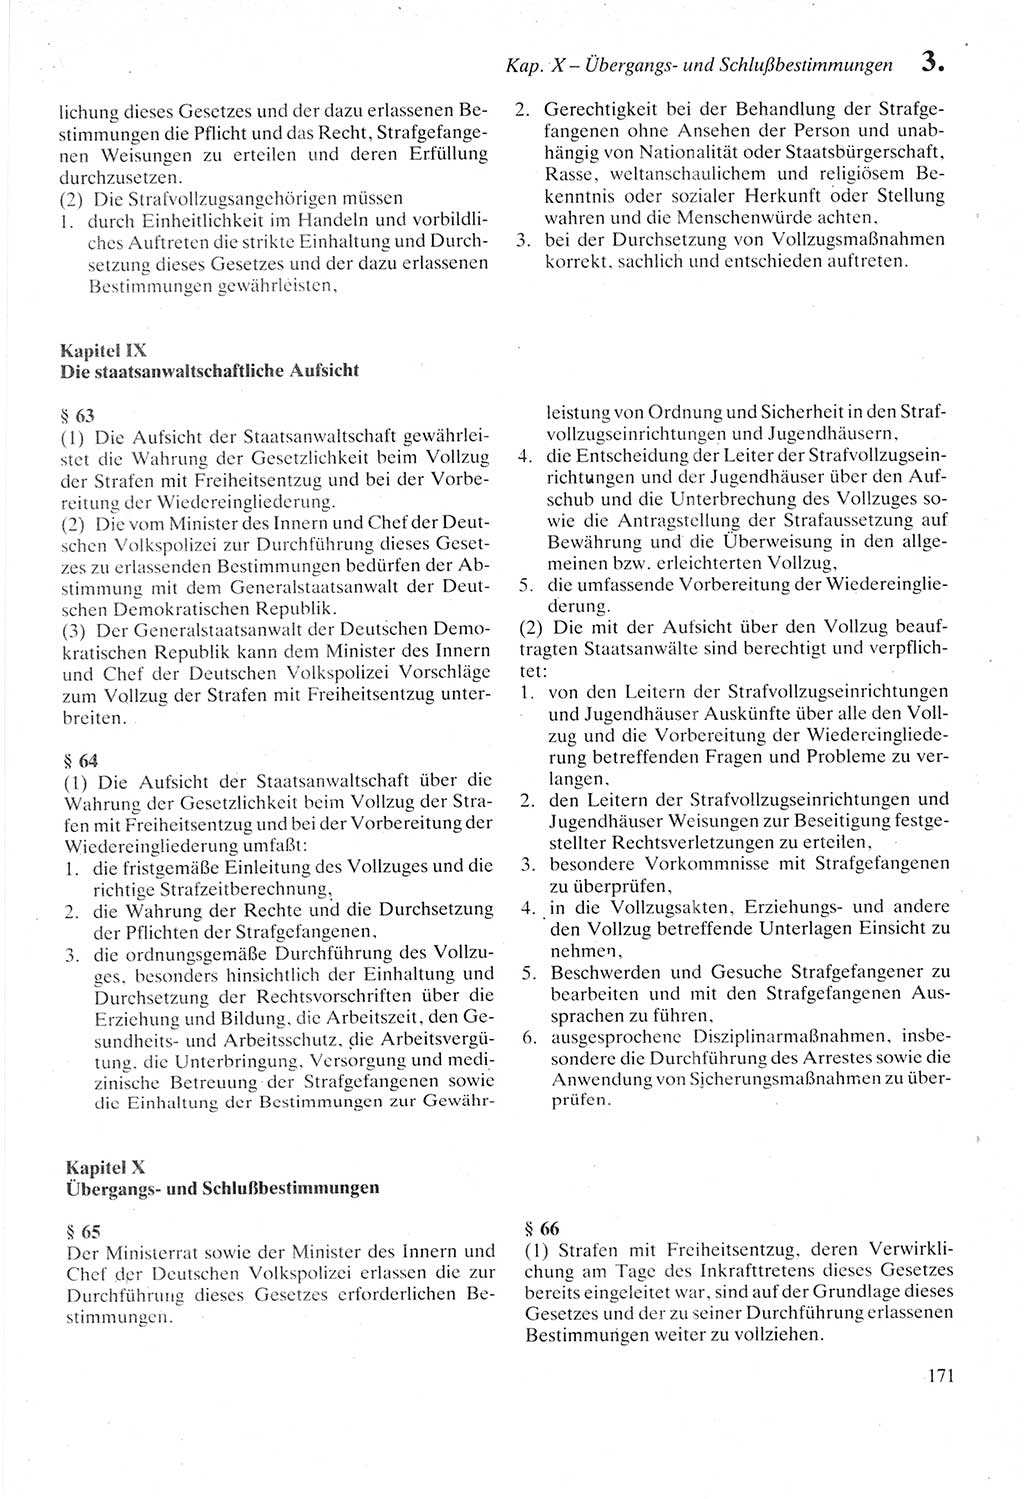 Strafprozeßordnung (StPO) der Deutschen Demokratischen Republik (DDR) sowie angrenzende Gesetze und Bestimmungen 1987, Seite 171 (StPO DDR Ges. Best. 1987, S. 171)